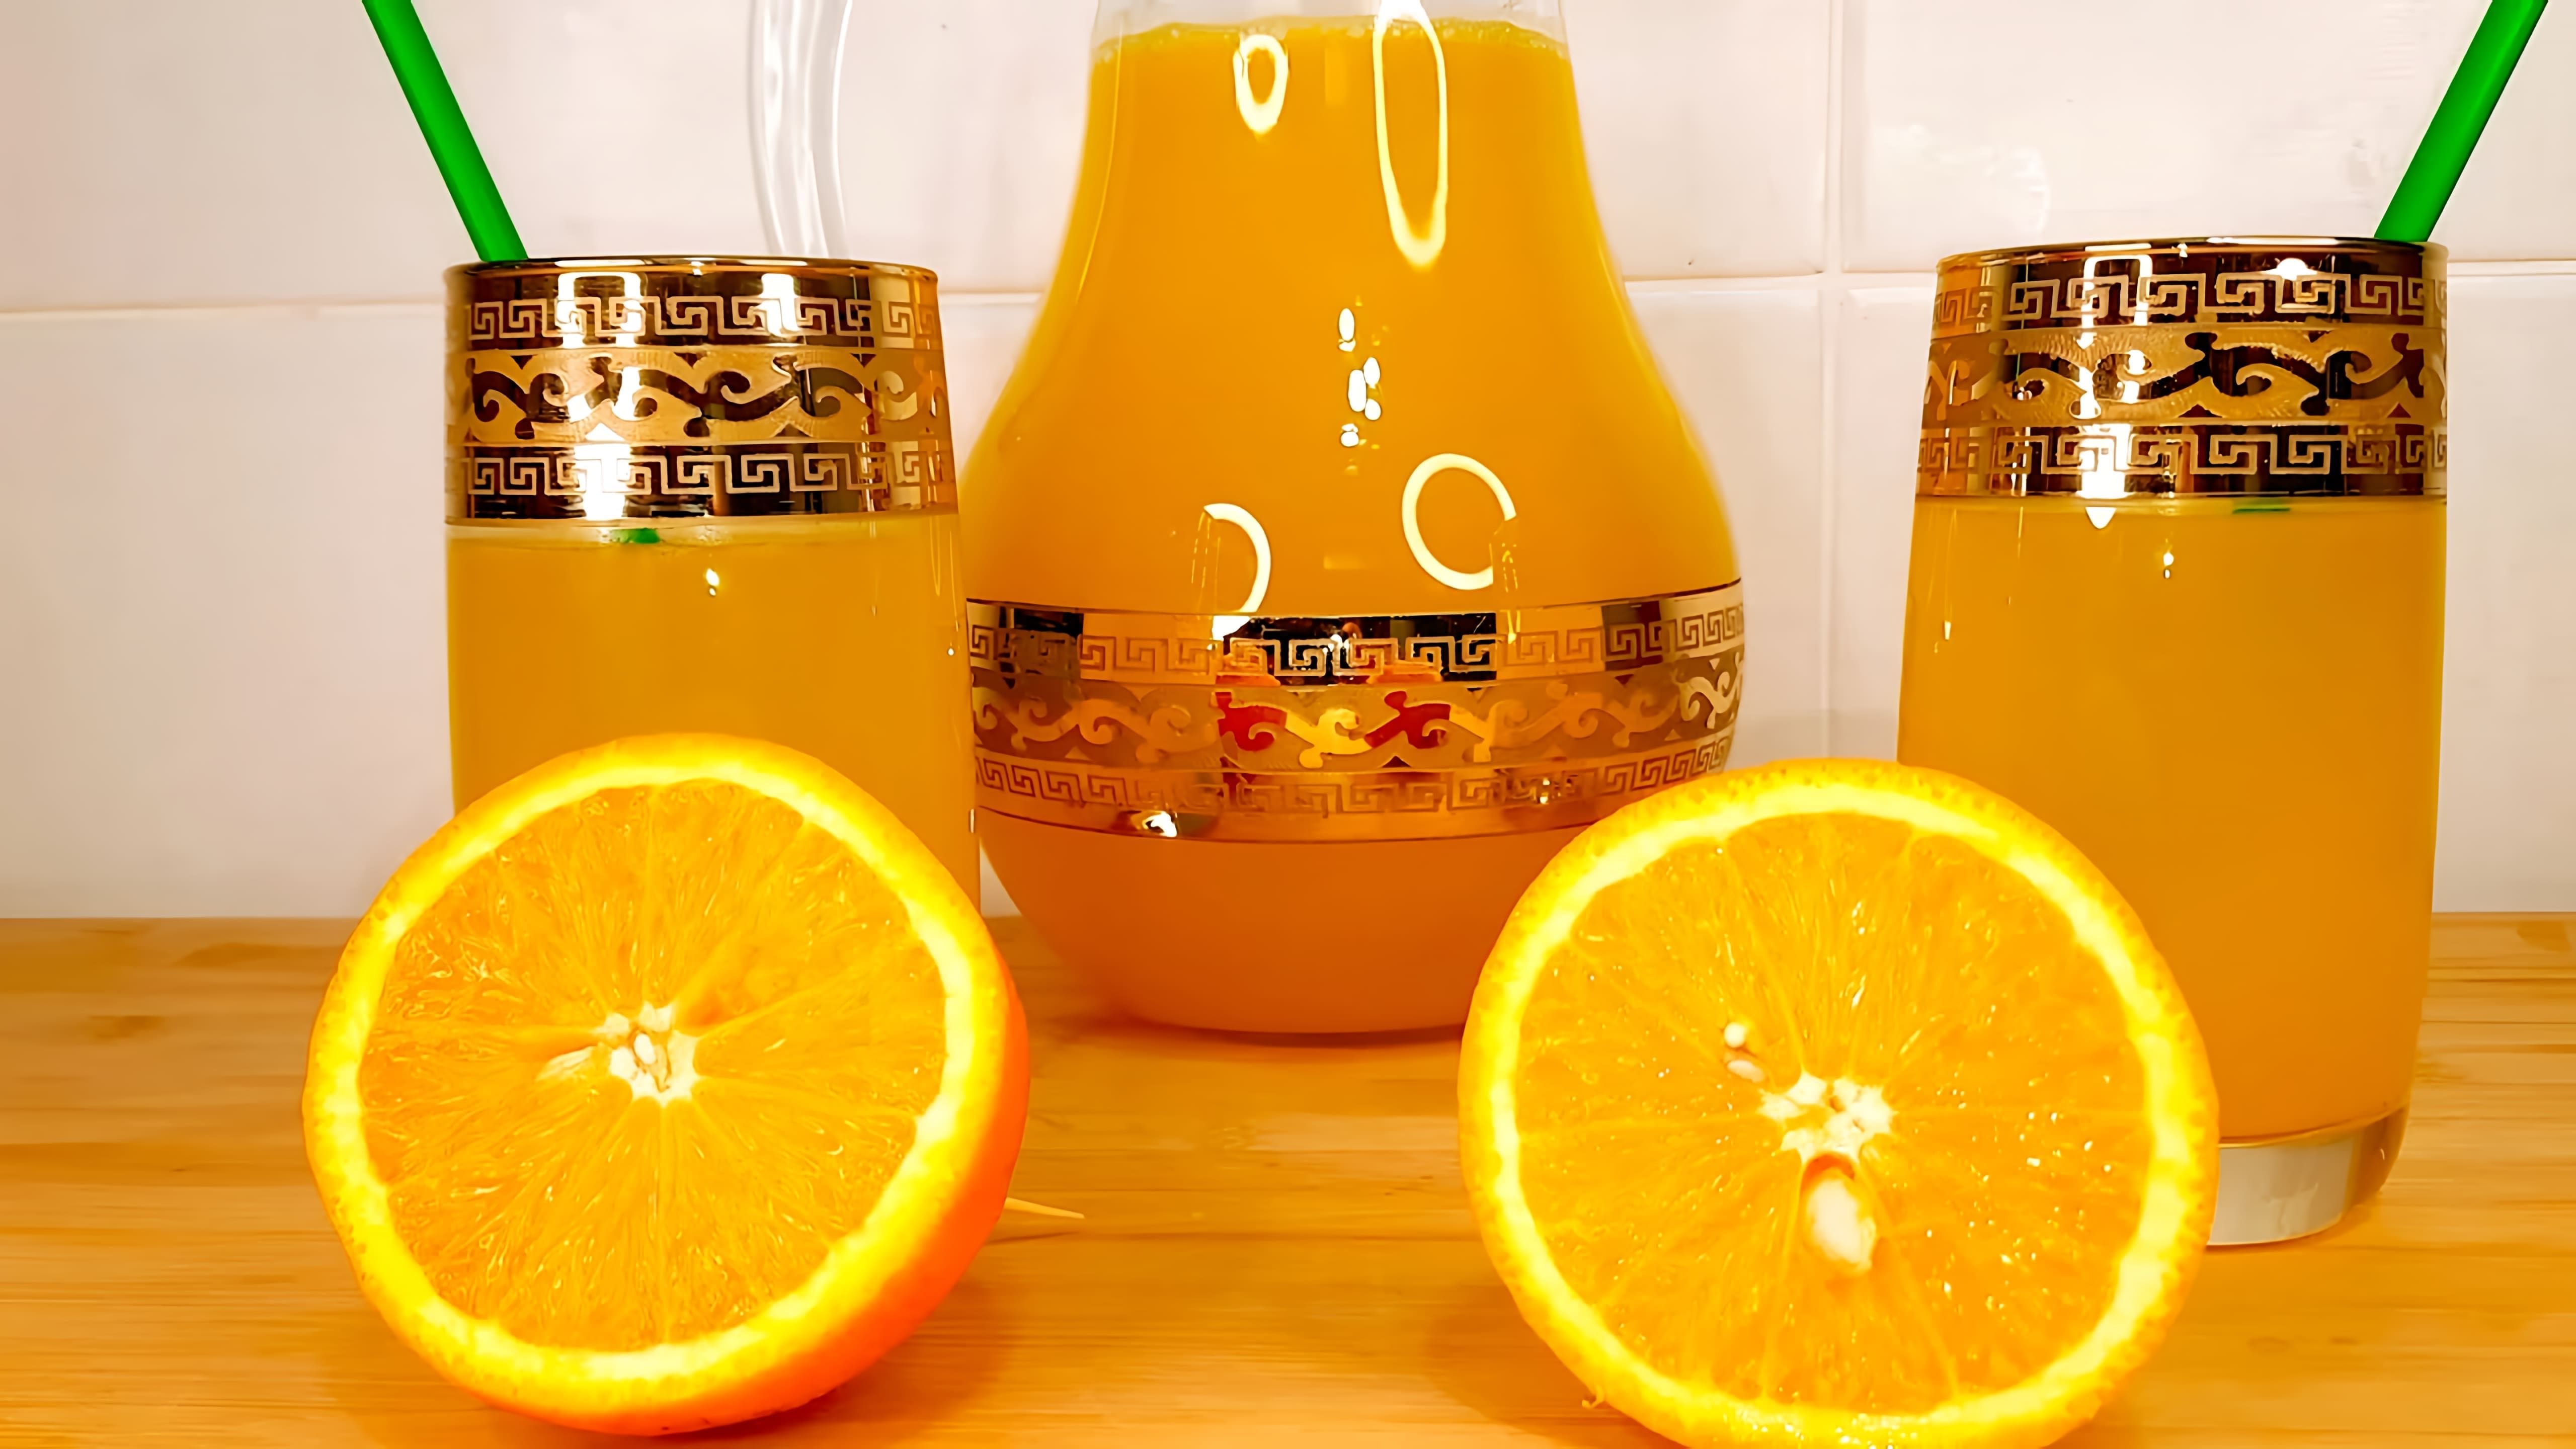 В этом видео демонстрируется процесс приготовления домашнего лимонада из лимона и апельсина